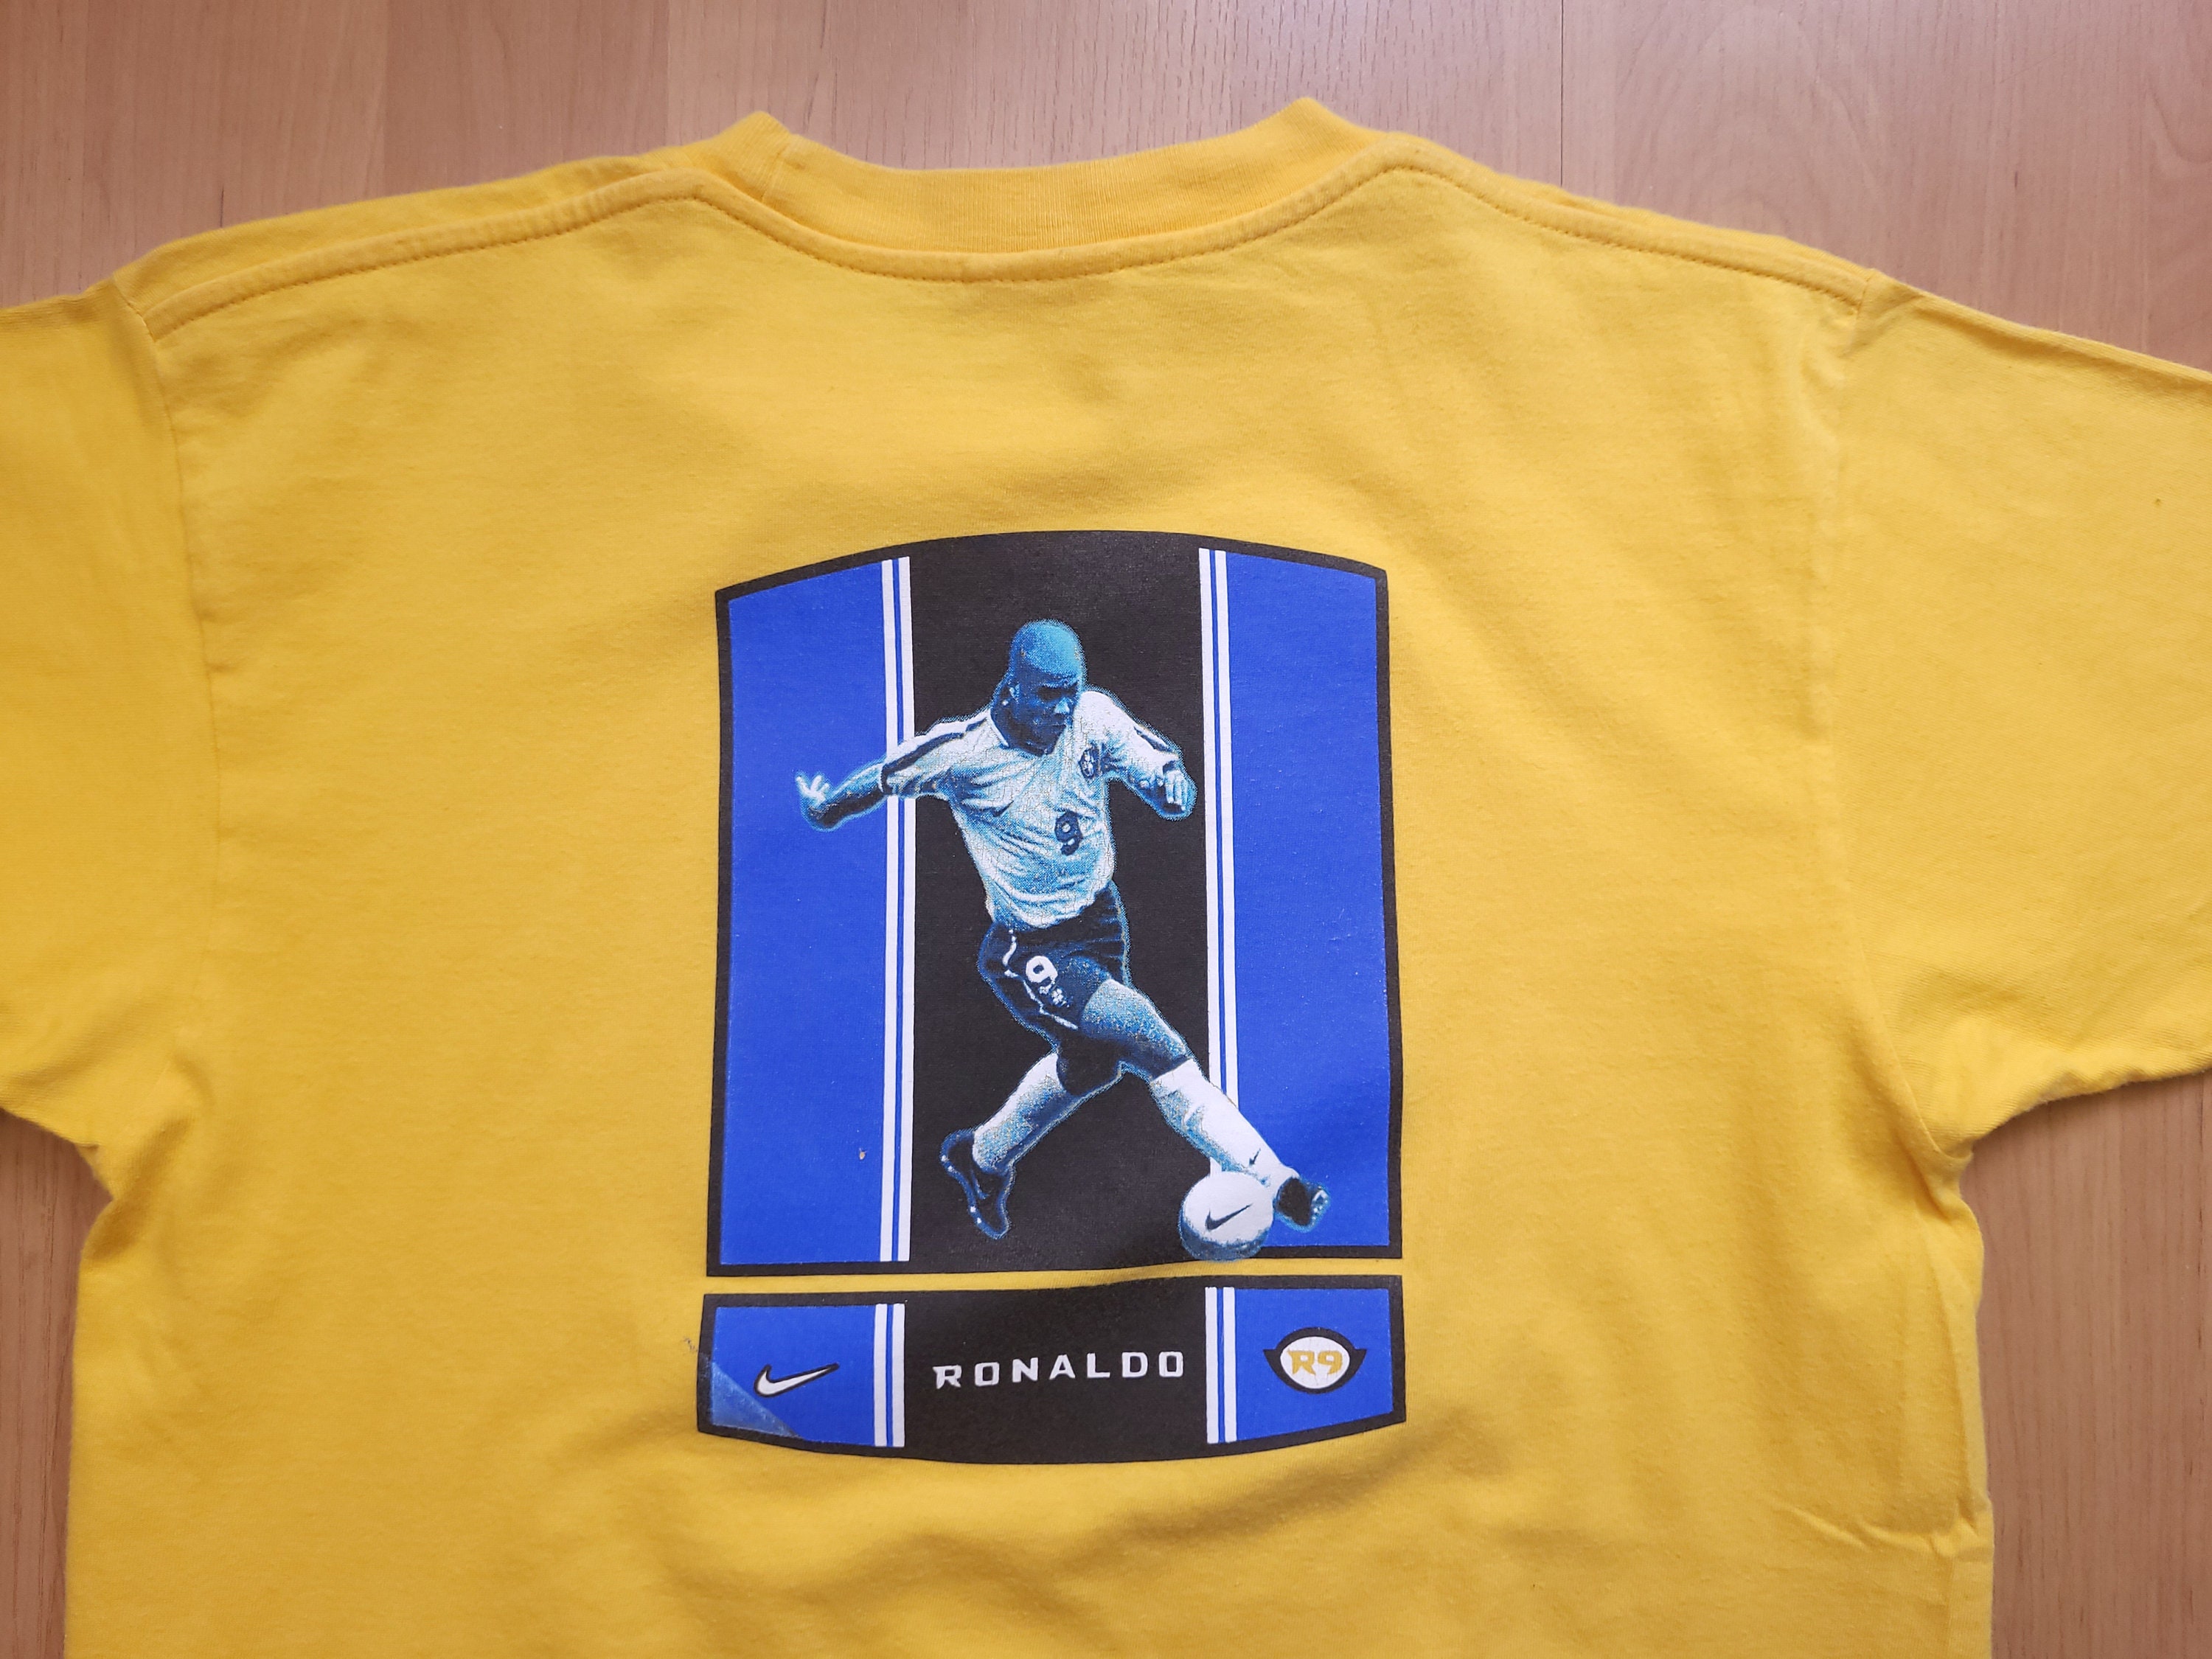 Nike Men's T-Shirt - Yellow - M